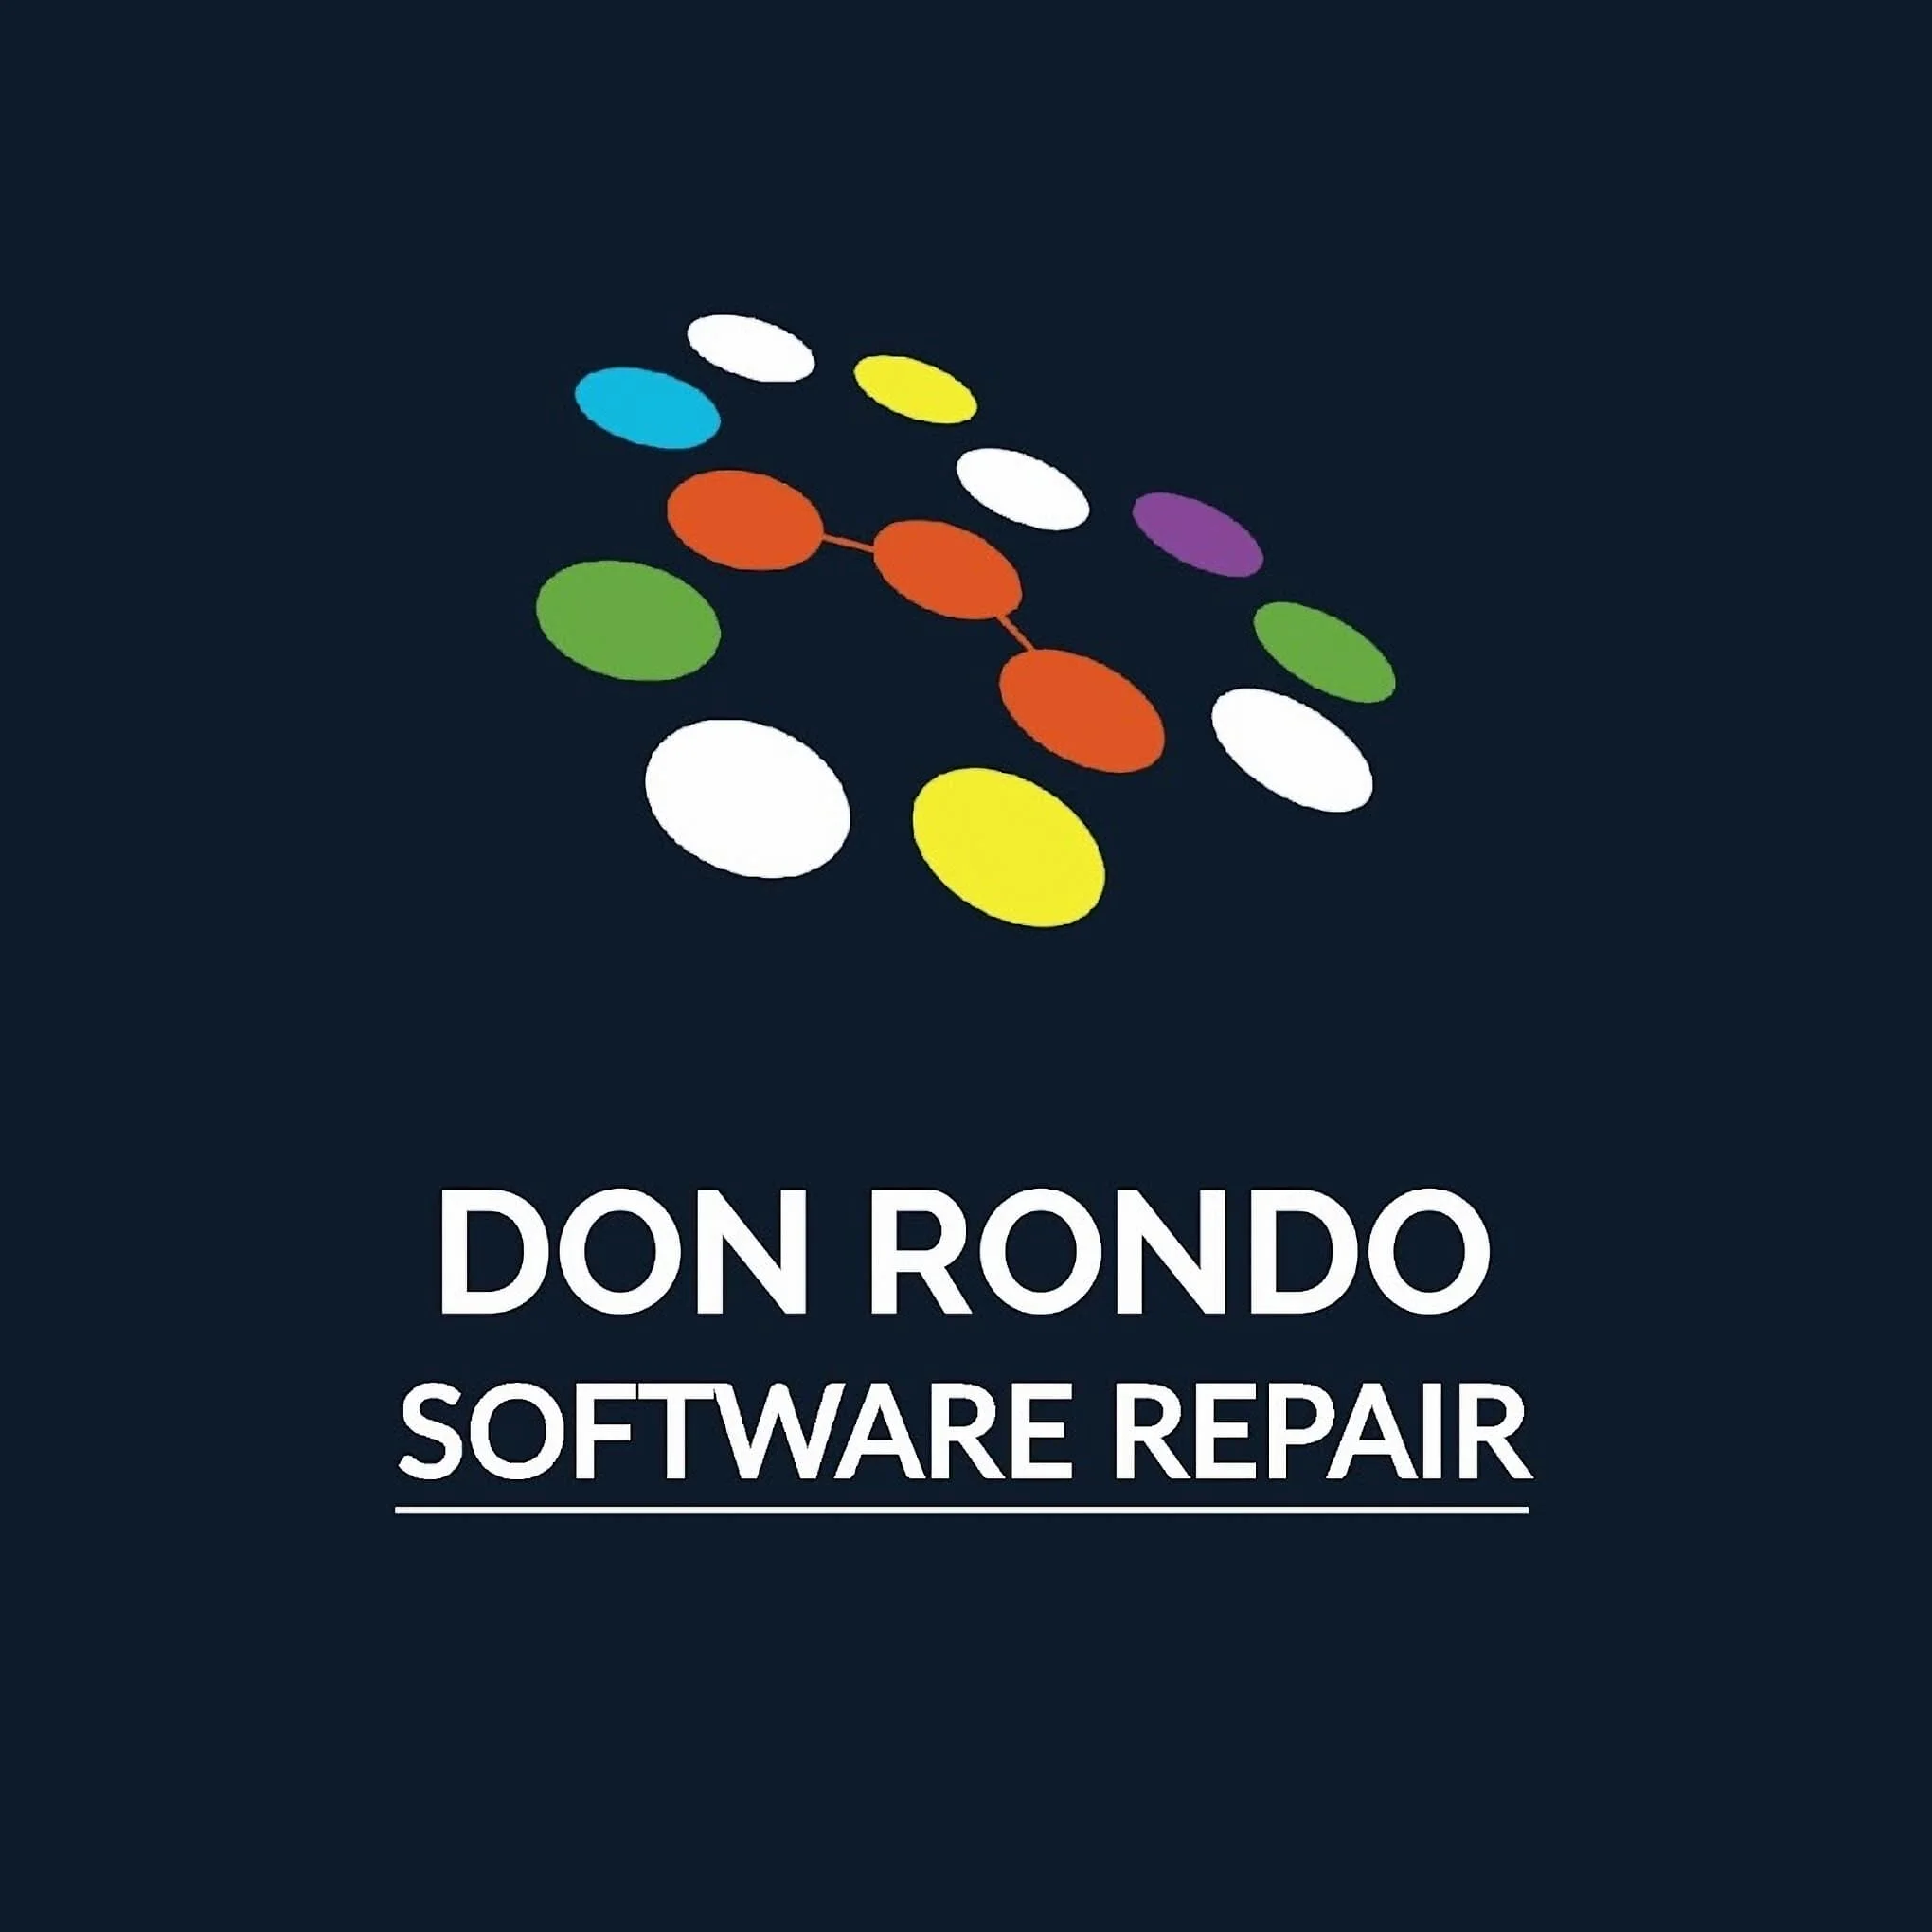 DON RONDO CELL-3505